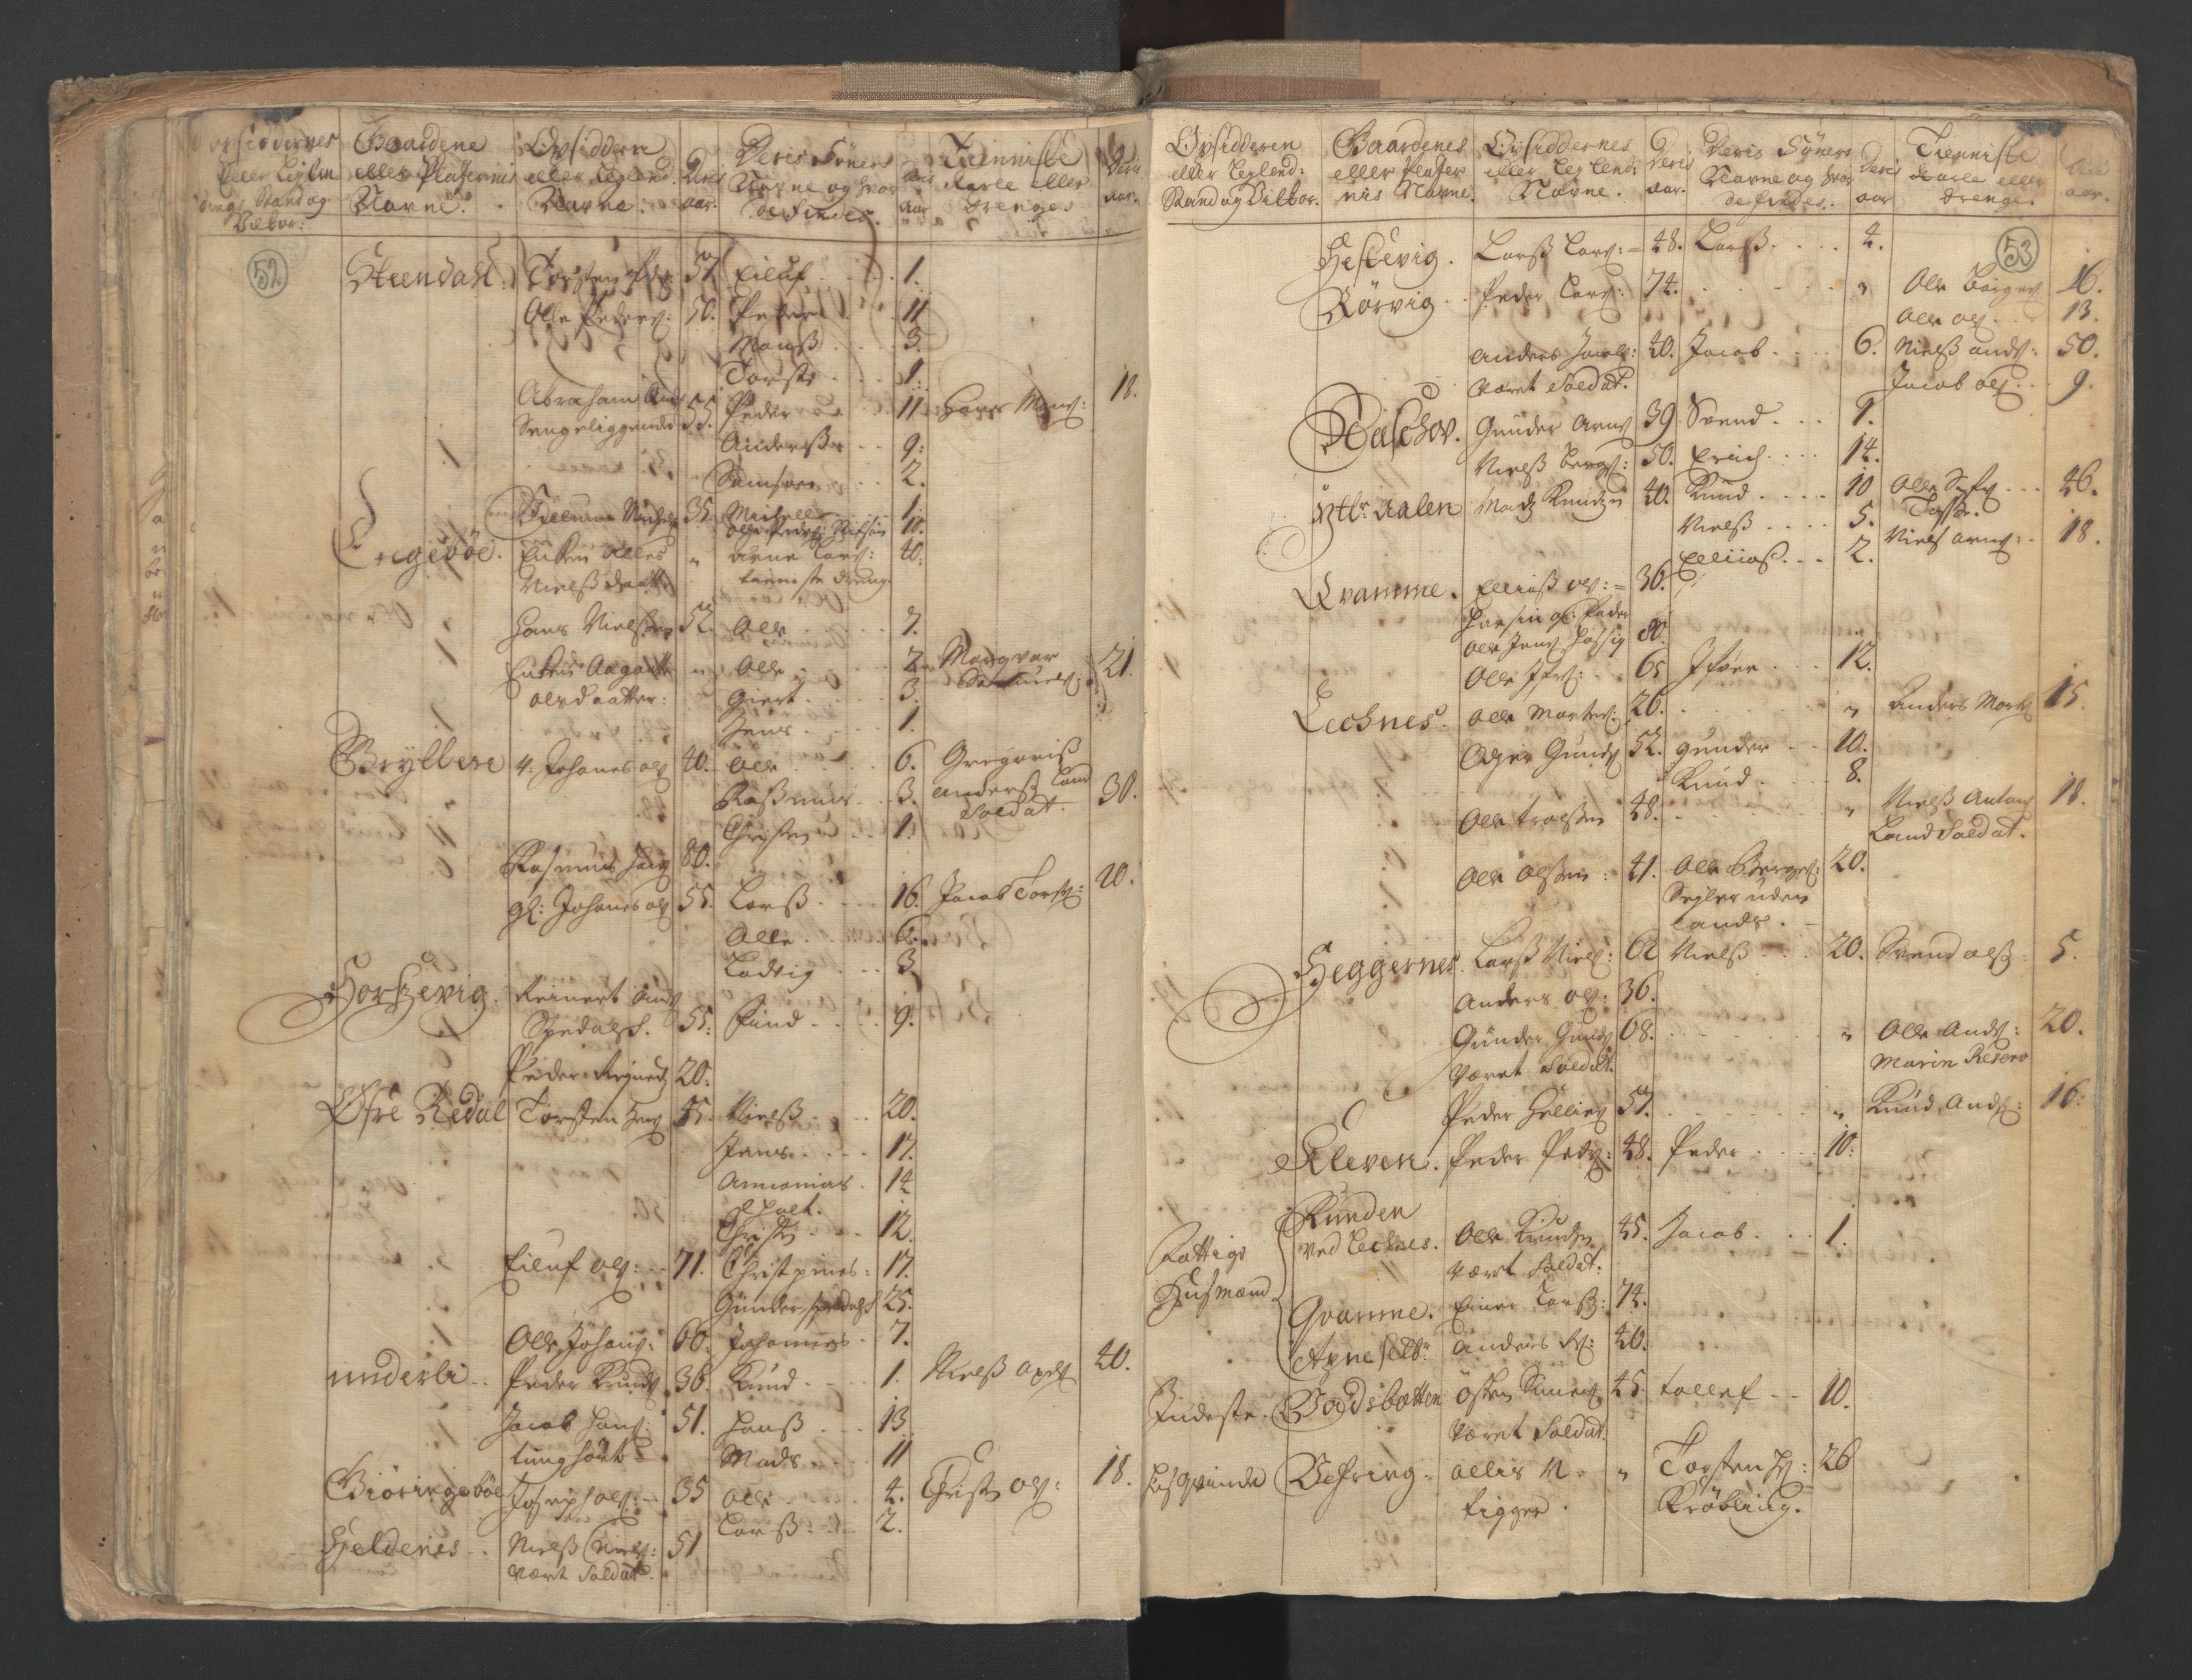 RA, Census (manntall) 1701, no. 9: Sunnfjord fogderi, Nordfjord fogderi and Svanø birk, 1701, p. 52-53